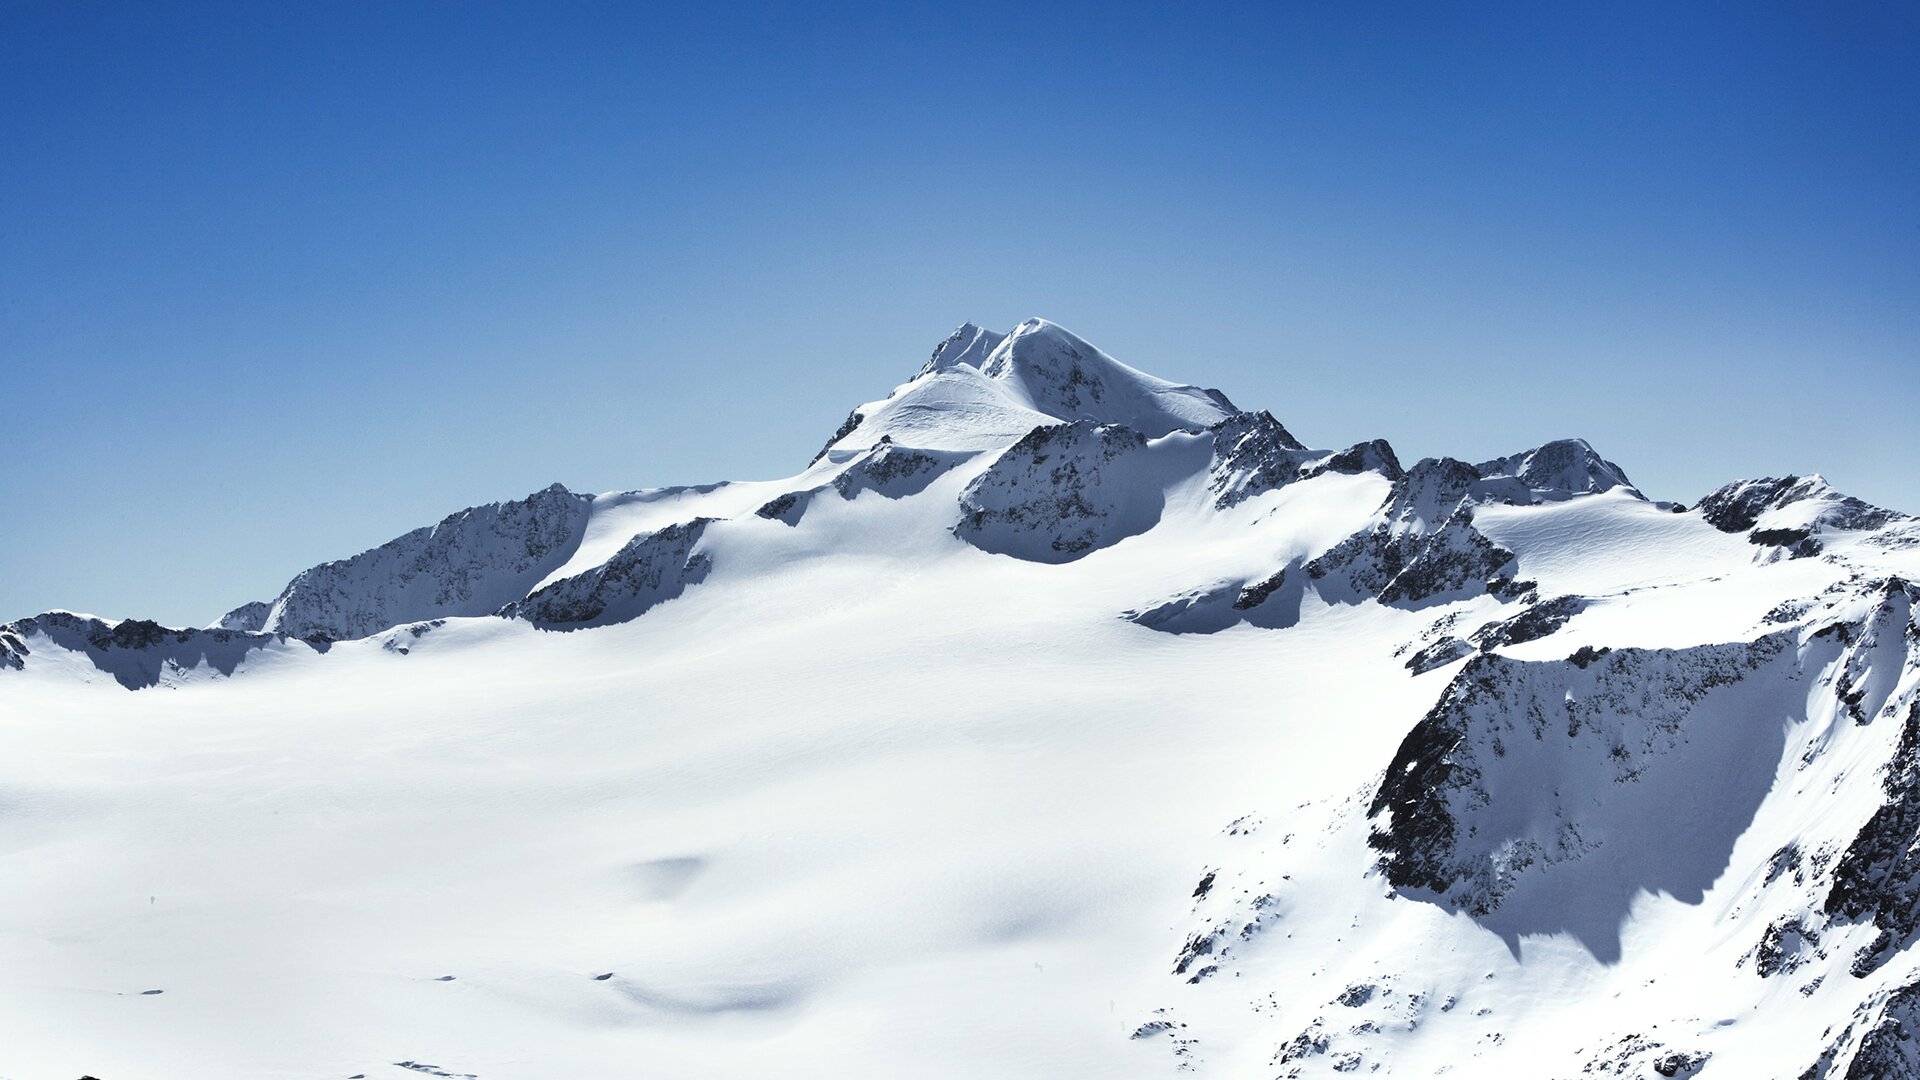 Wildspitze in winter